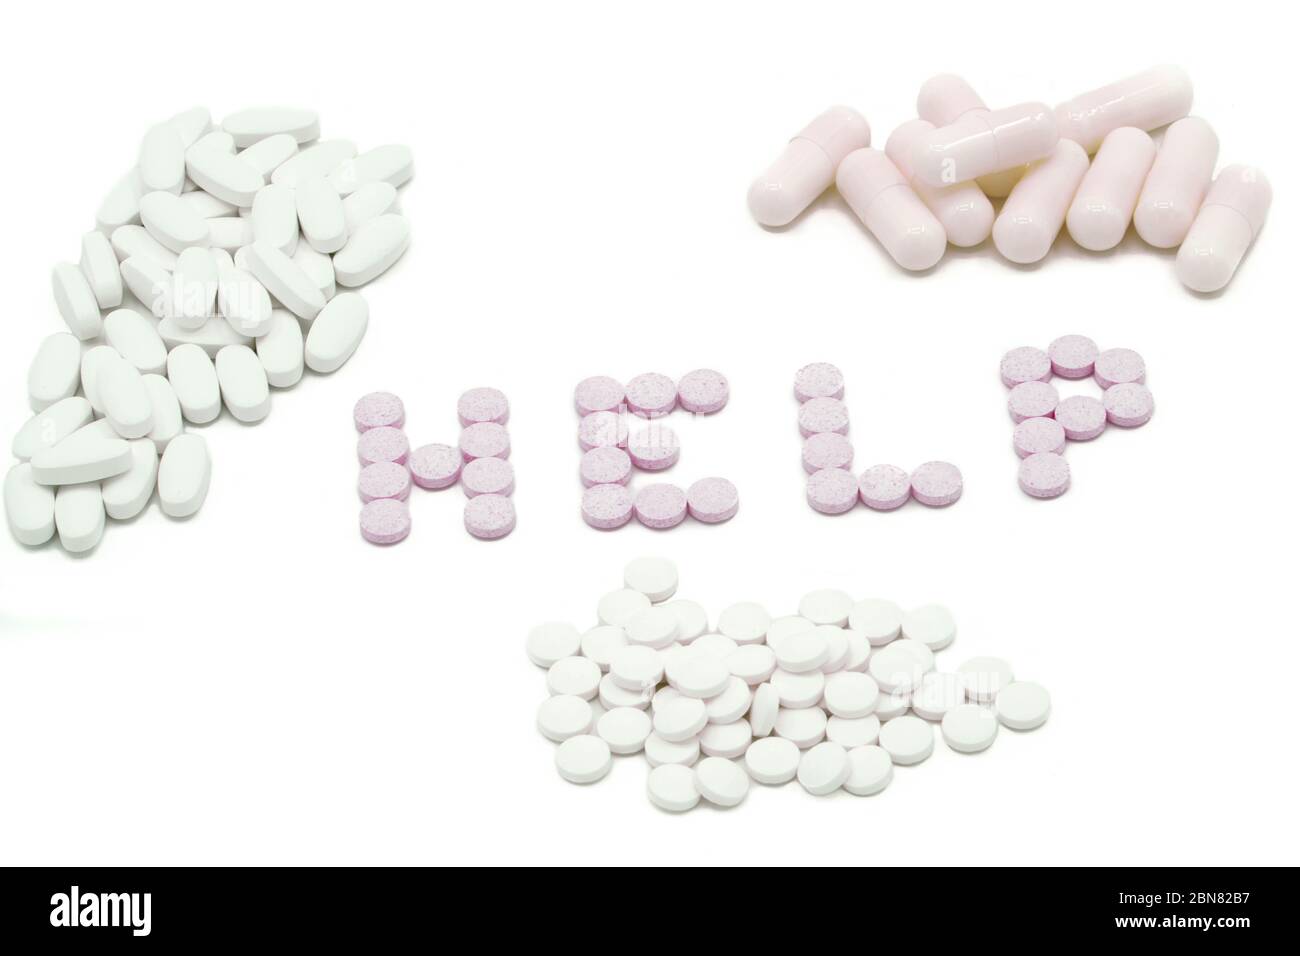 Beaucoup de médicaments différents, pilules, comprimés, capsules- fond blanc Banque D'Images